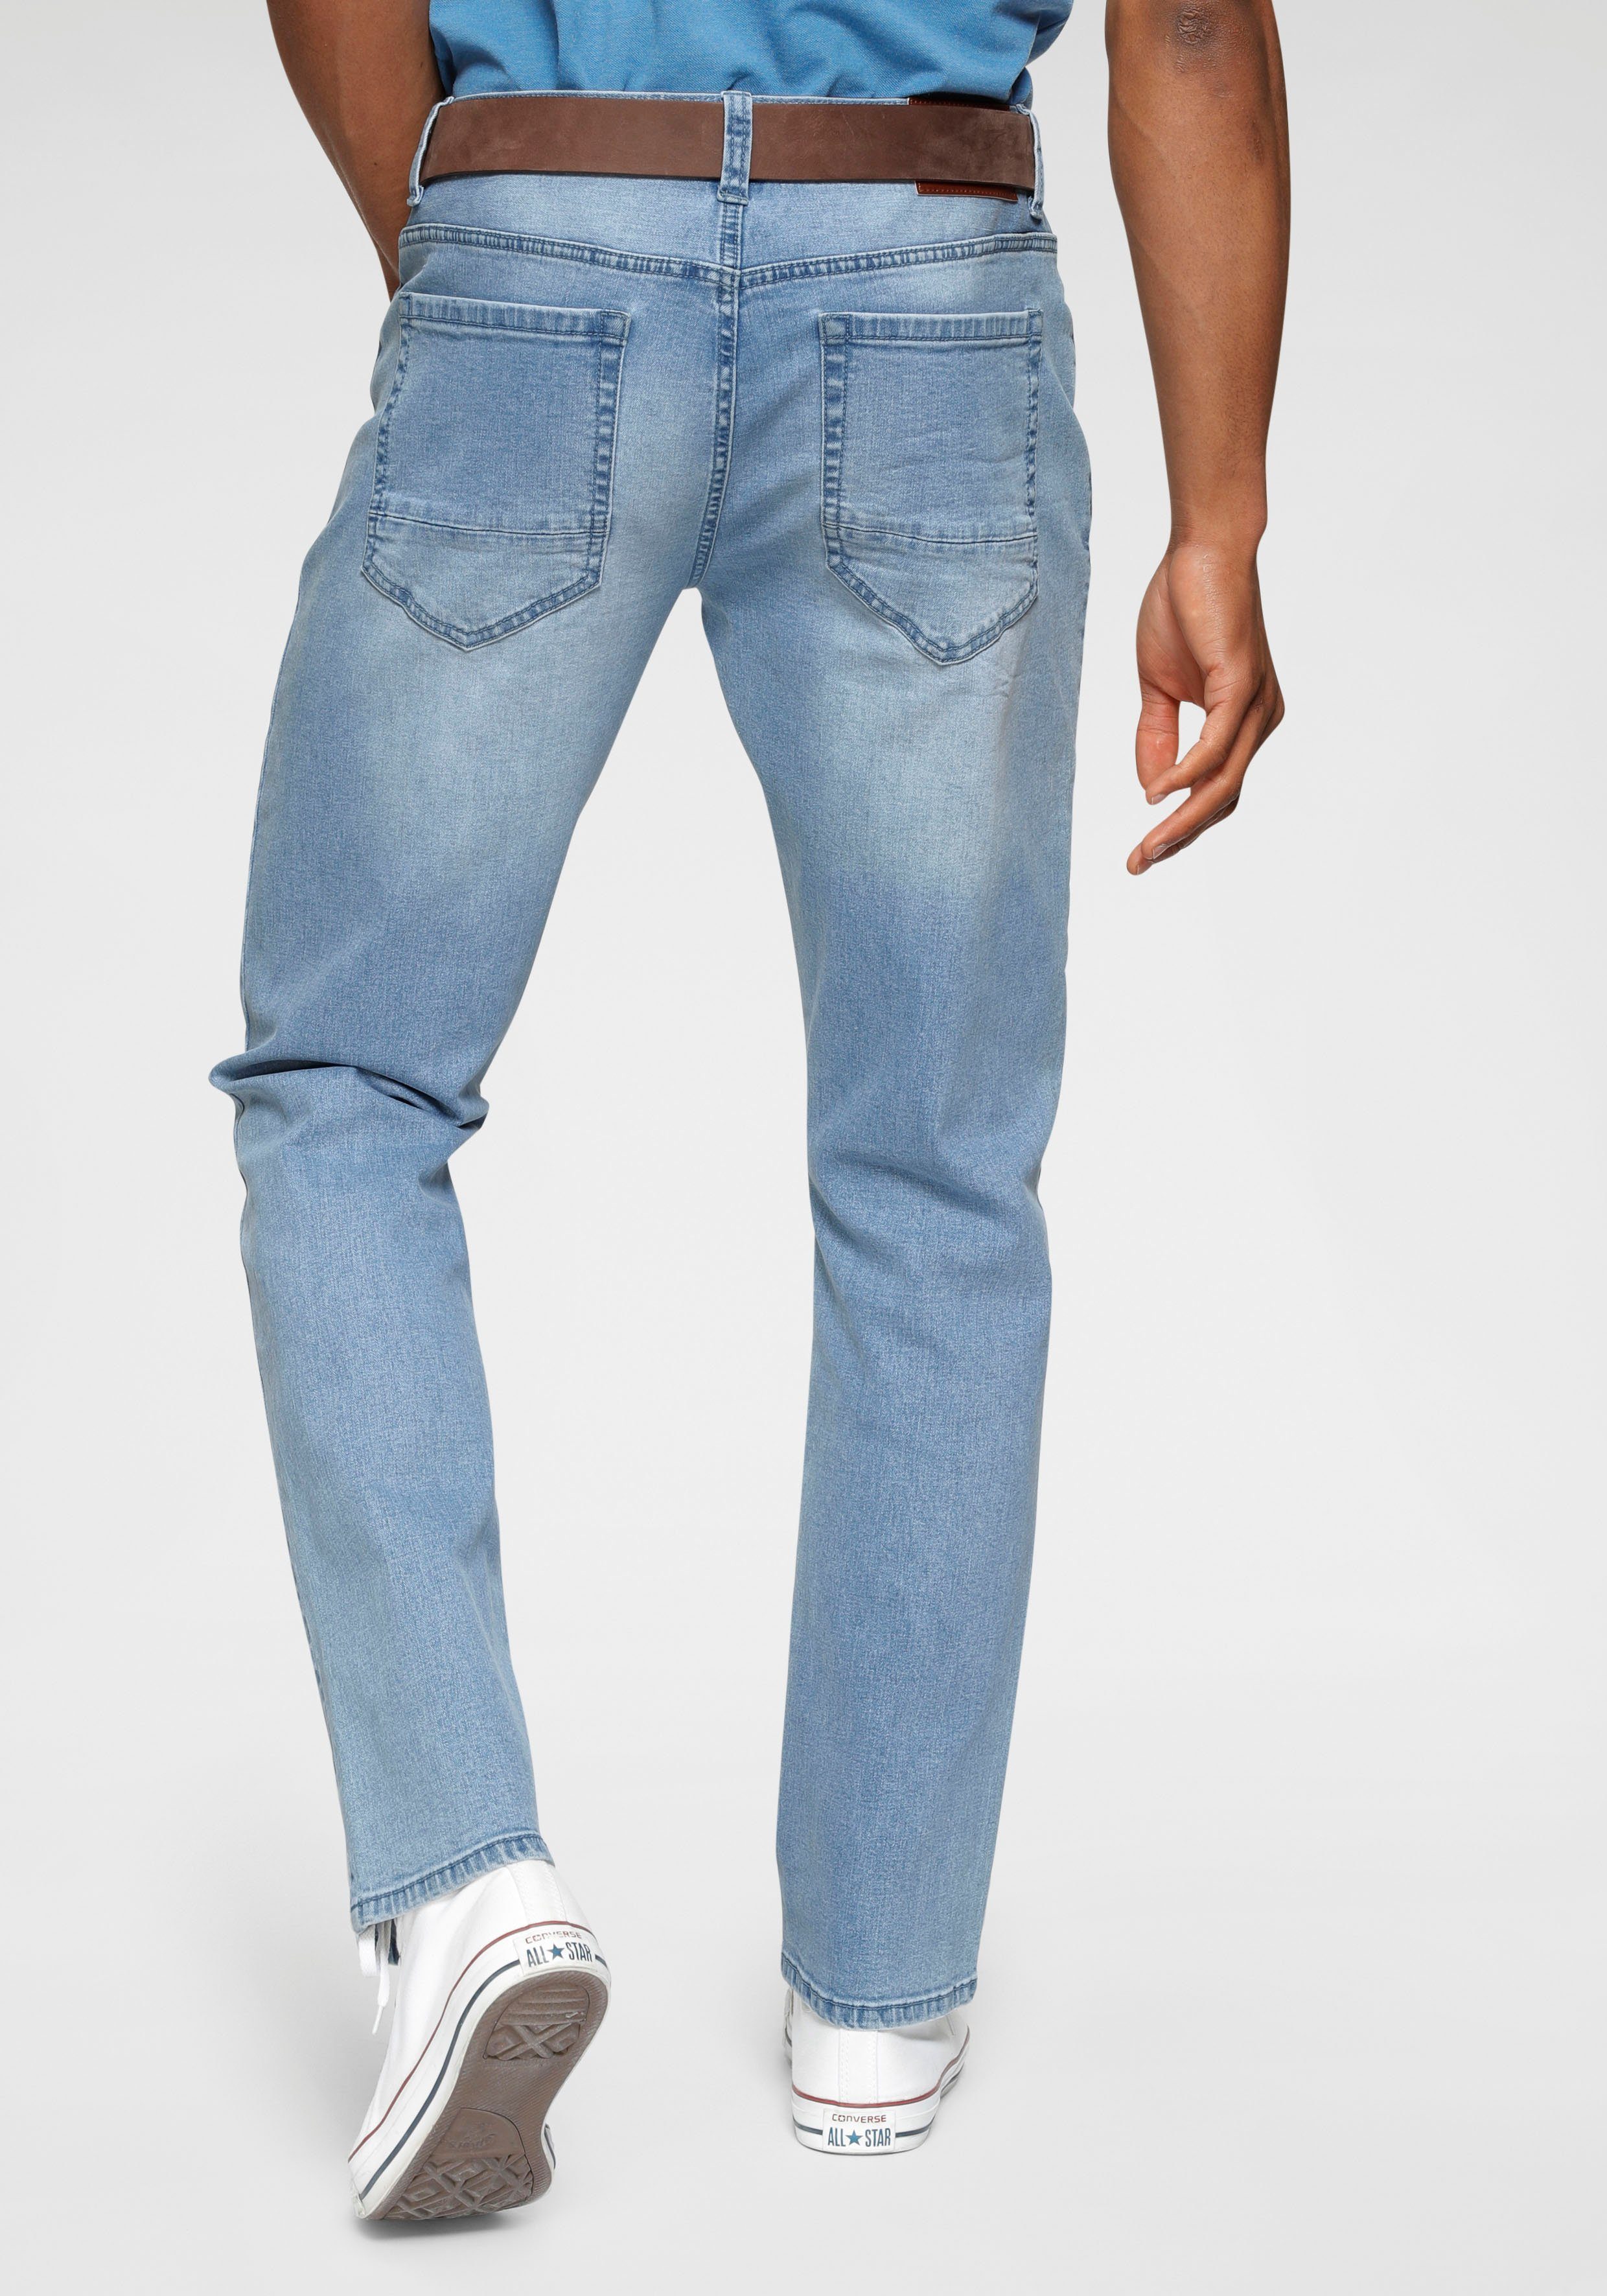 Bruno Banani Straight-Jeans Hutch online kaufen | OTTO